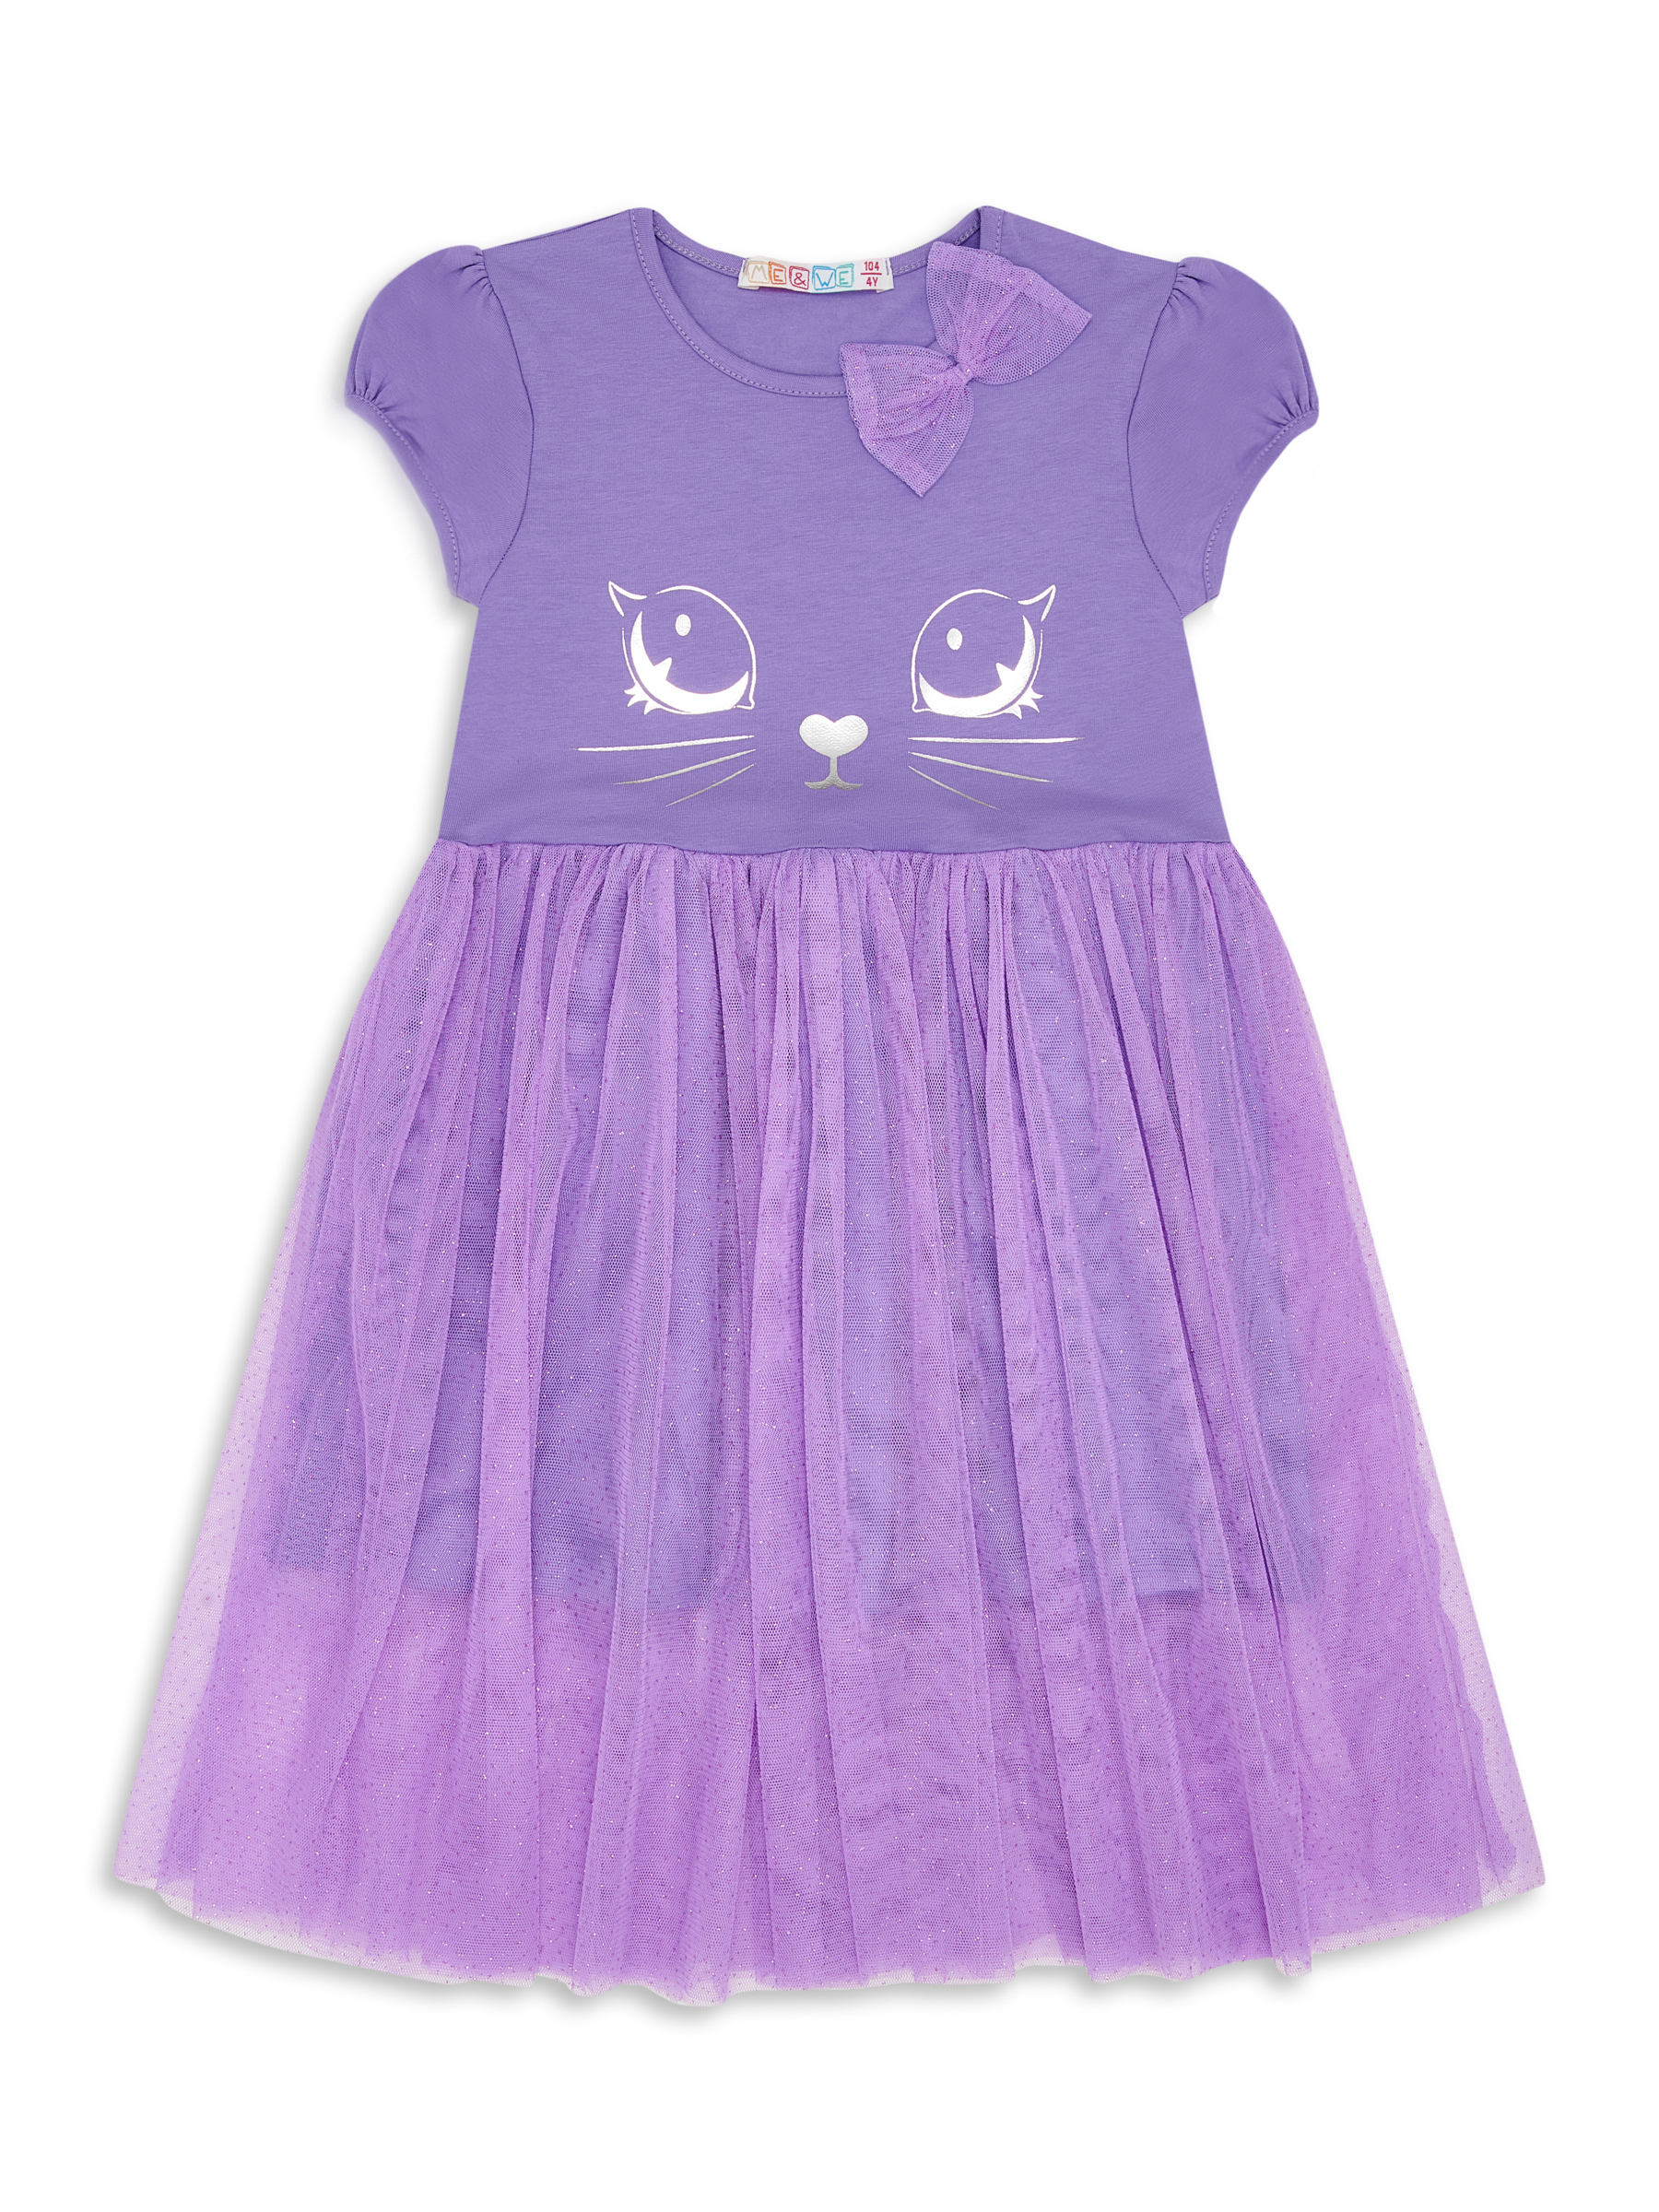 Платье детское Me&We KG218-J601-699 цв. фиолетовый р. 110 пальто детское orso bianco дизель фиолетовый 128